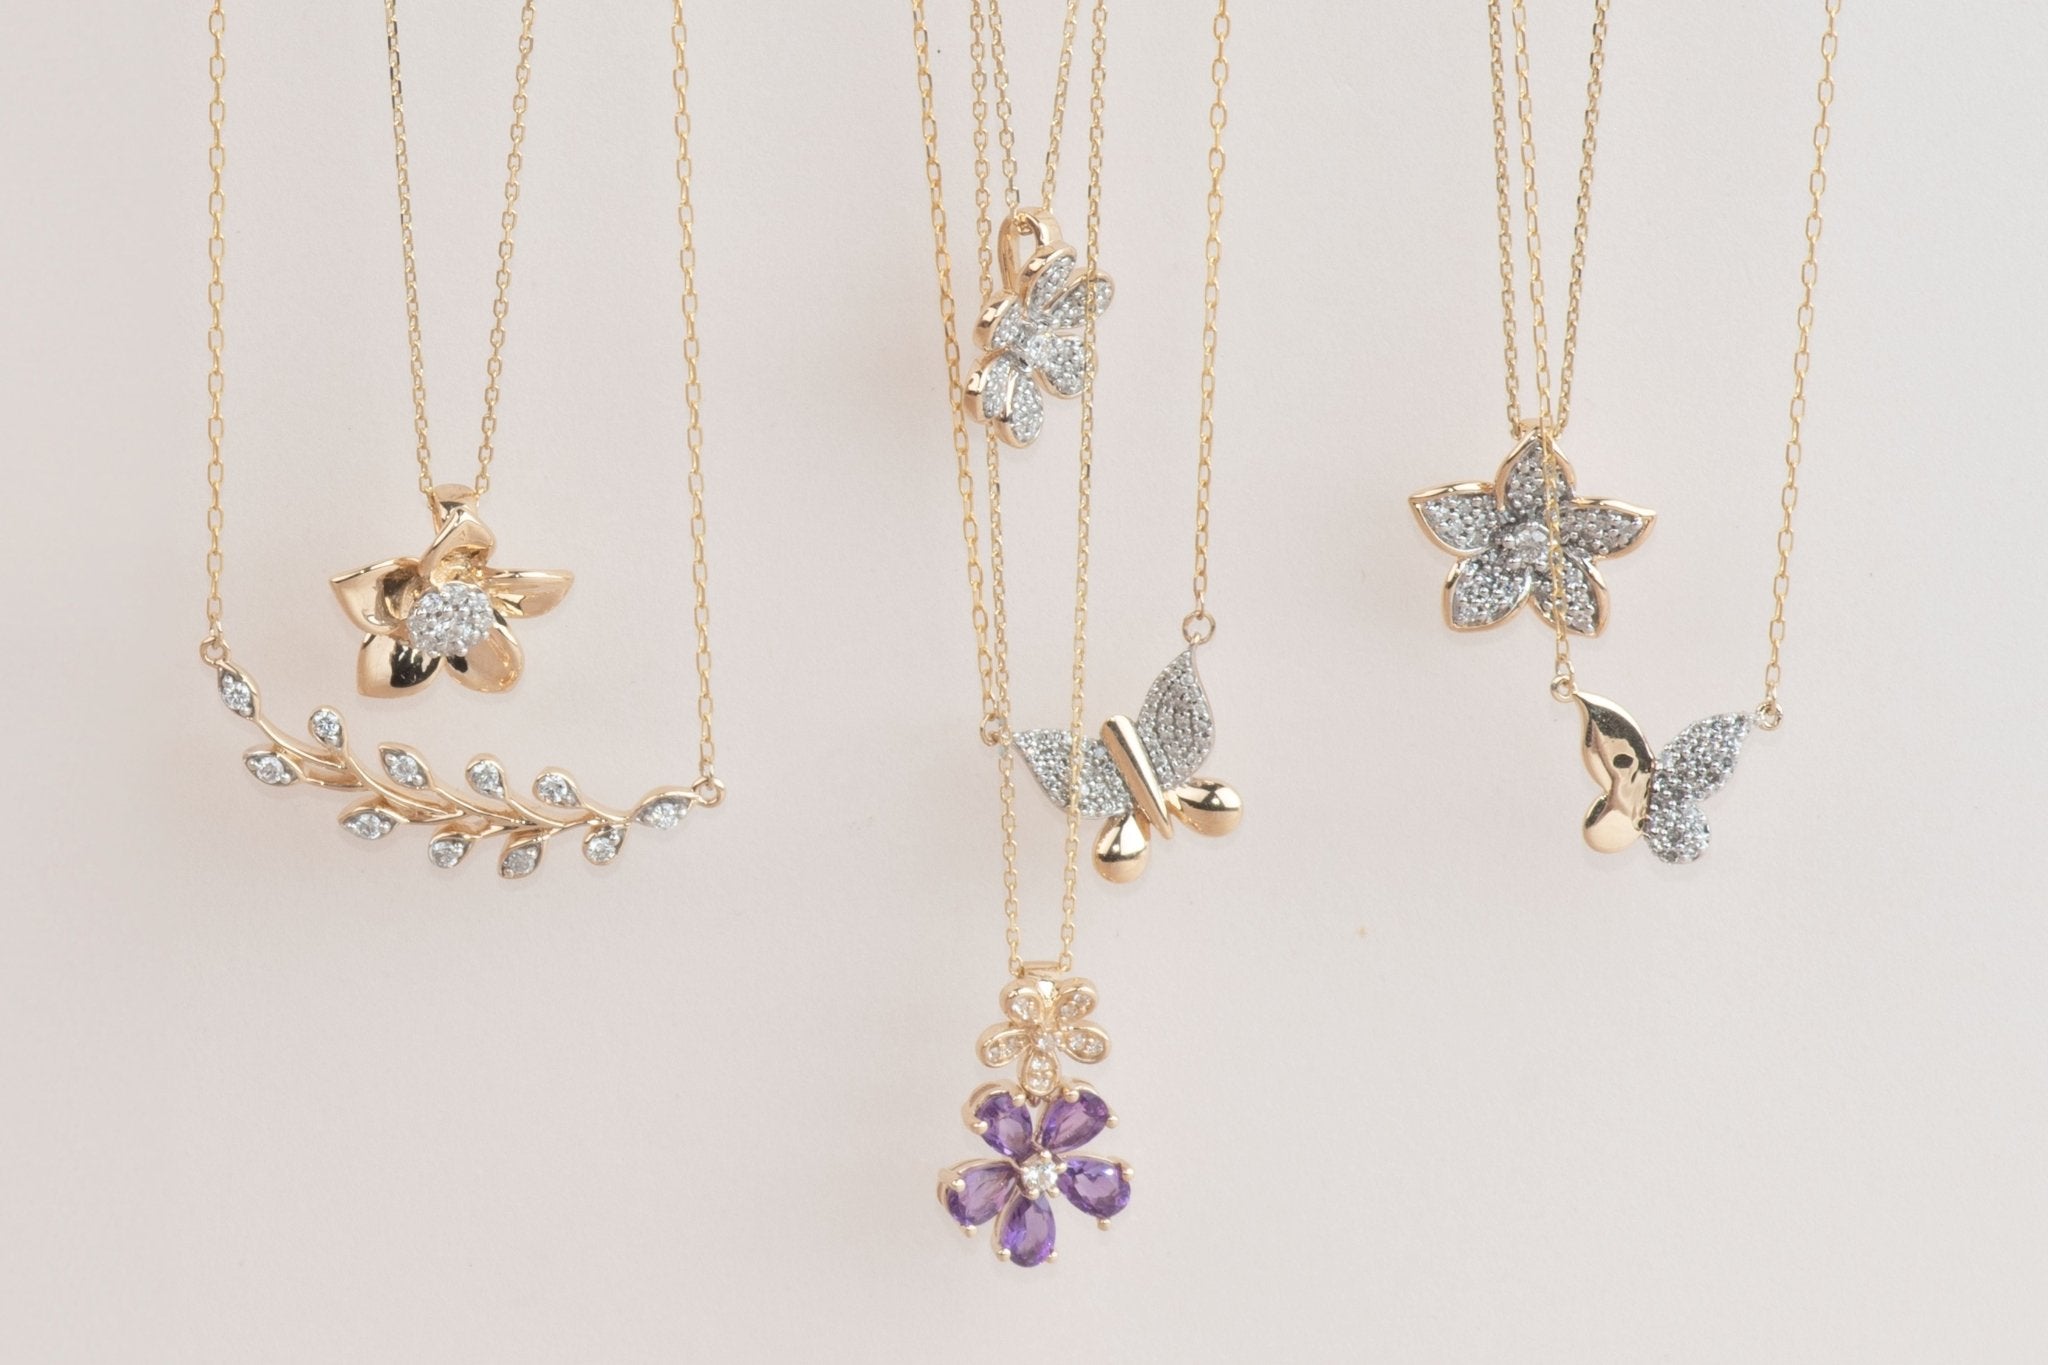 Olive Branch Diamond Bar Necklace Necklaces Estella Collection #product_description# 32705 10k April Birthstone Colorless Gemstone #tag4# #tag5# #tag6# #tag7# #tag8# #tag9# #tag10#